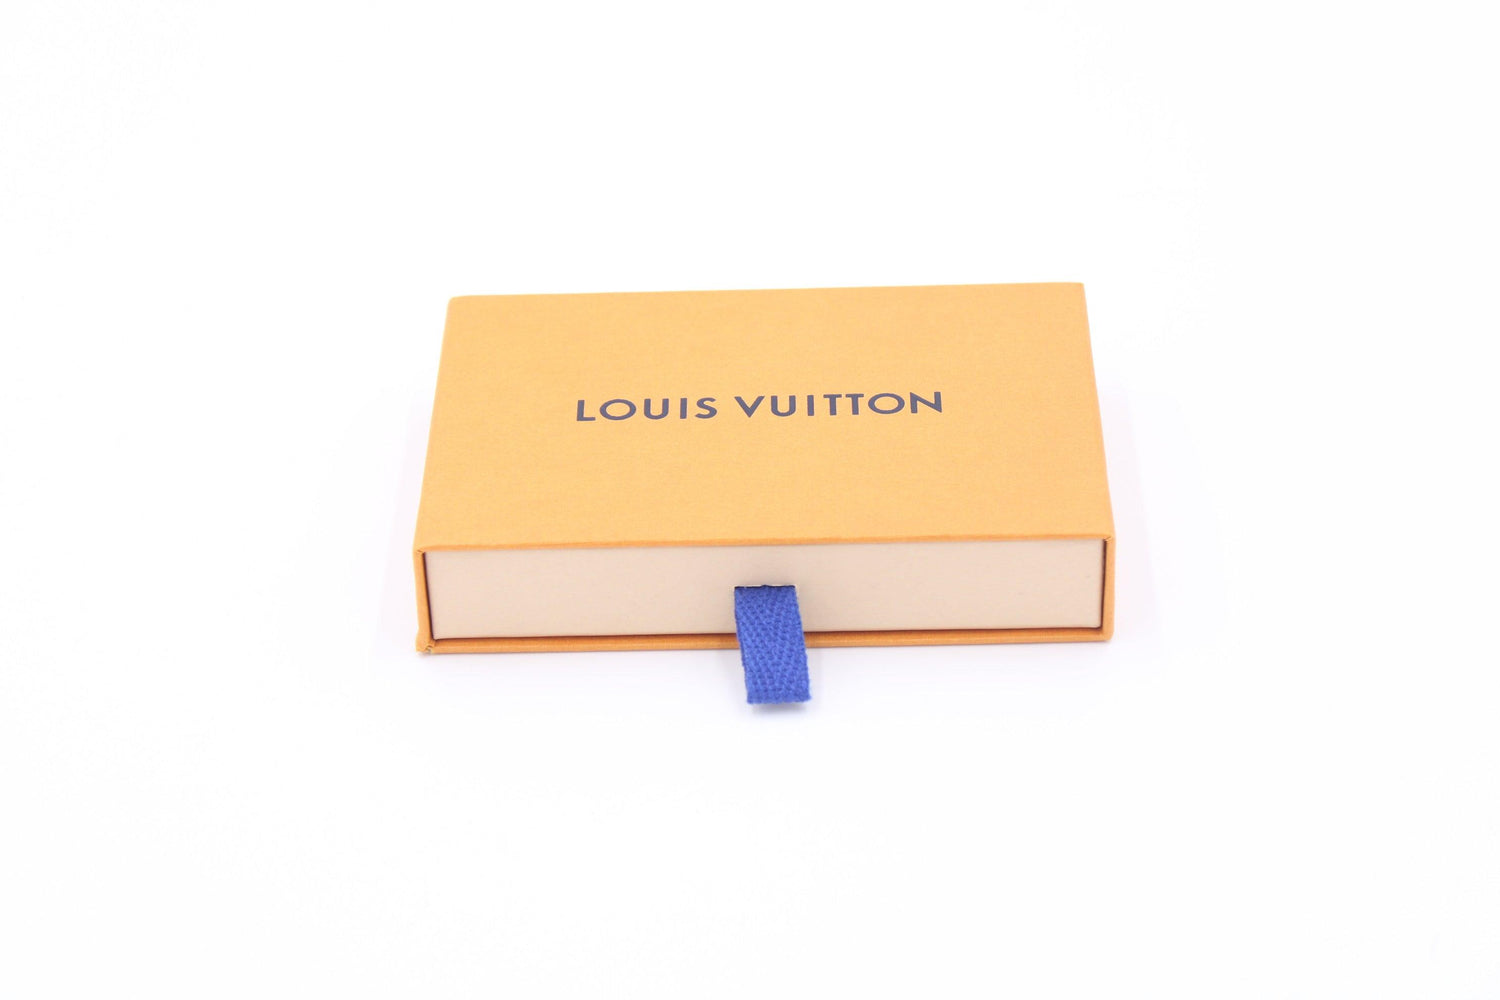 Louis Vuitton Aufbewahrungsboxen in orange - Pre-Loved.at